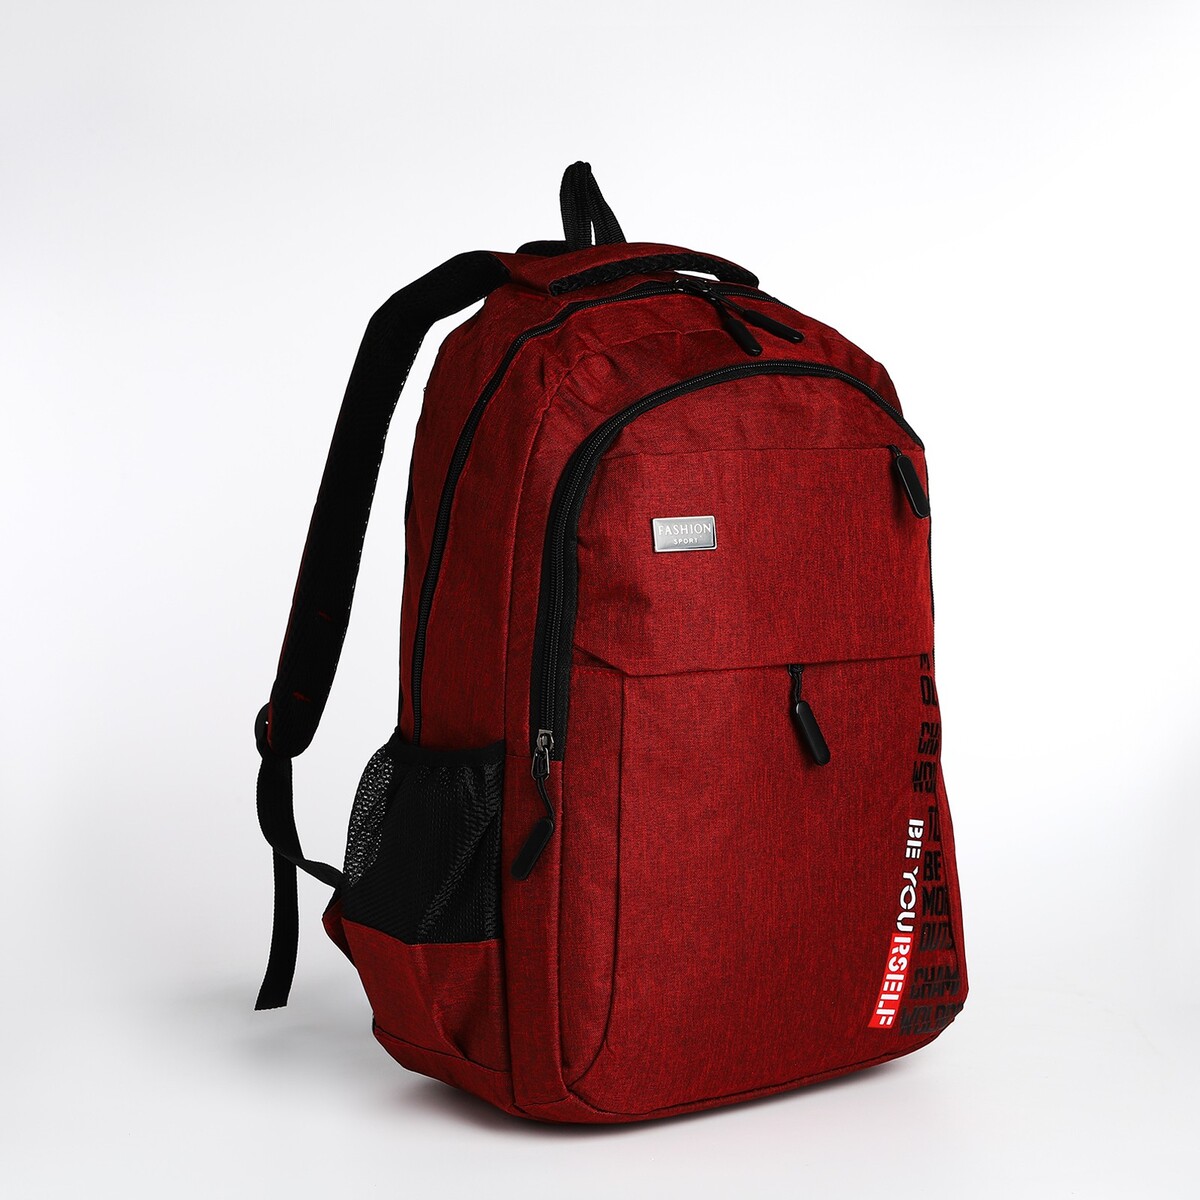 Рюкзак молодежный на молнии, 4 кармана, цвет бордовый рюкзак wenger urban contemporary 605024 14 бордовый 14 л